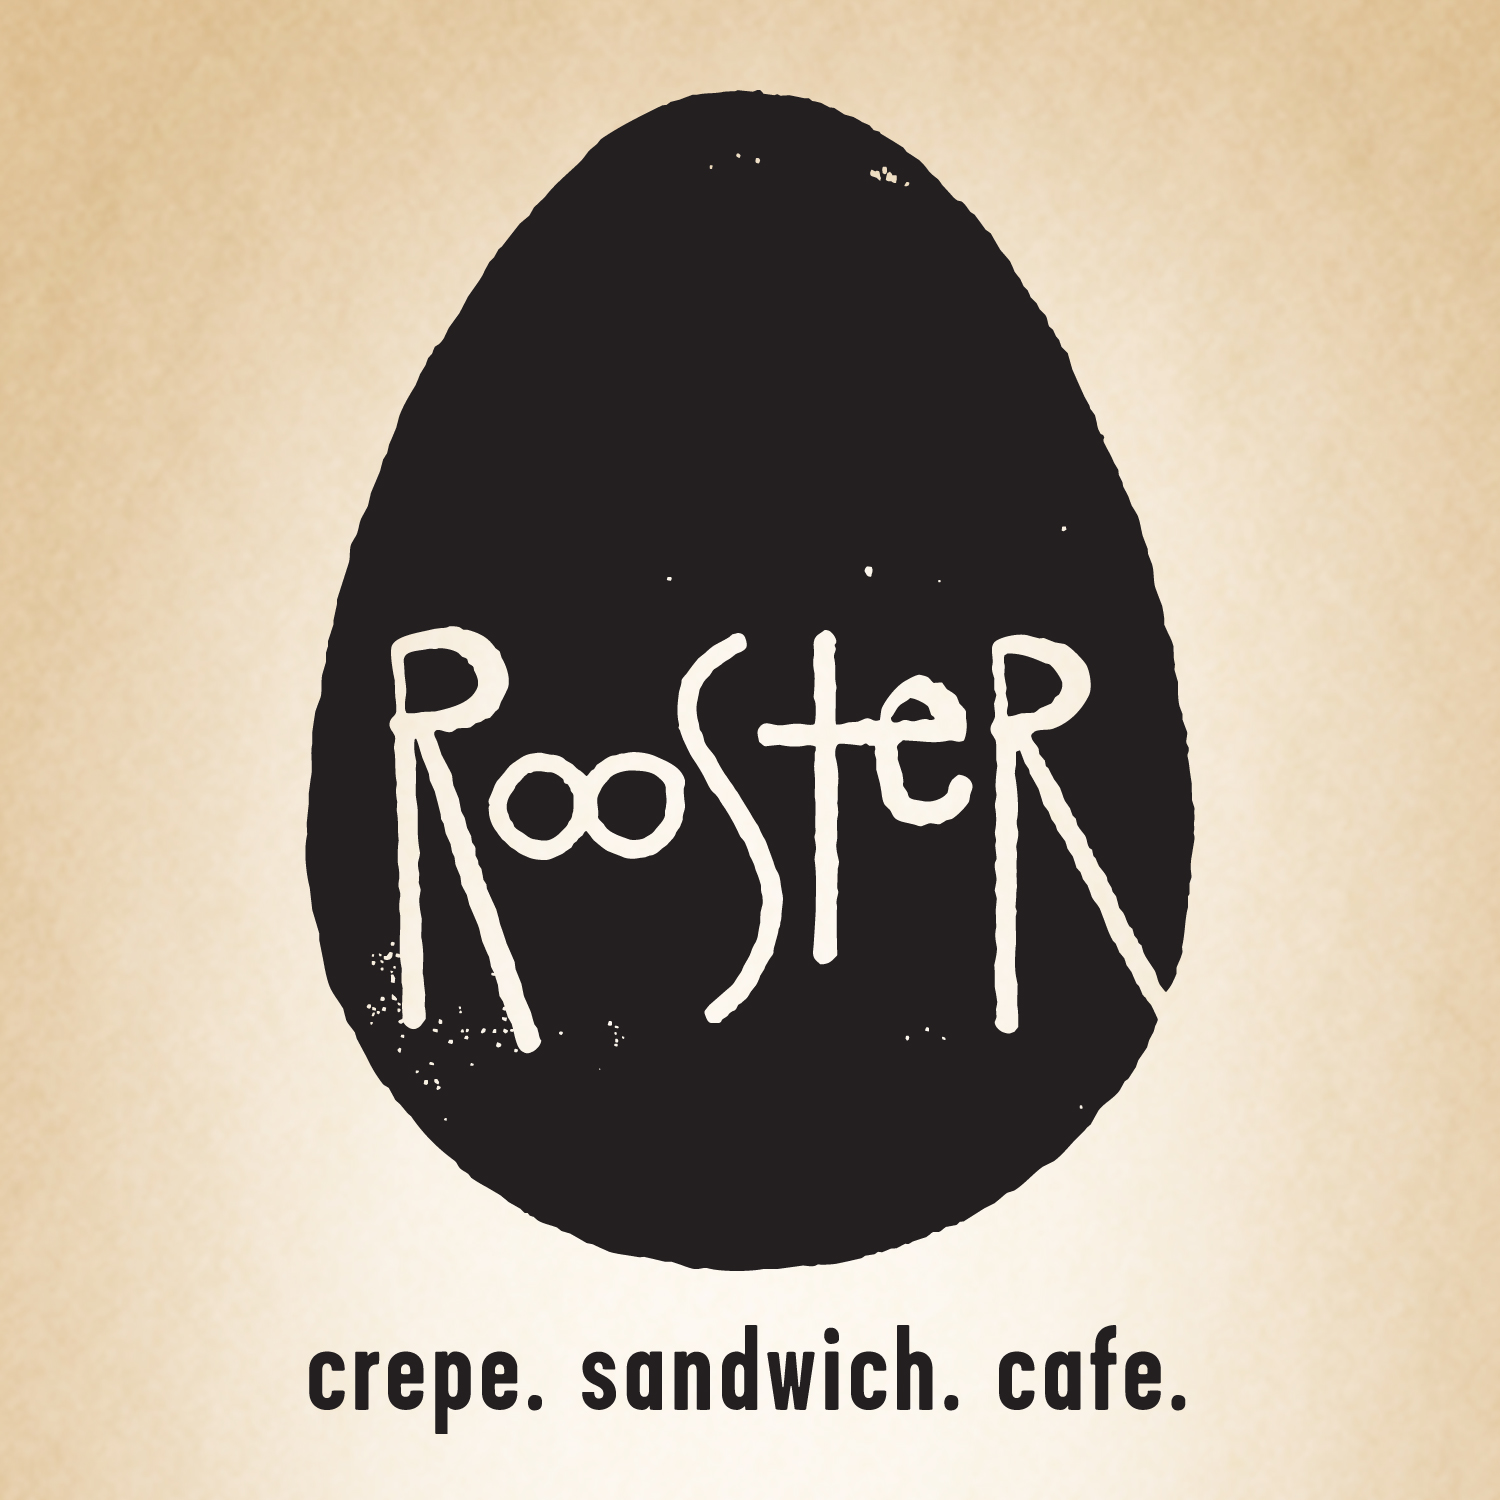 Rooster | cafe. crepe. sandwich | Best Breakfast, Brunch, Mimosa ...